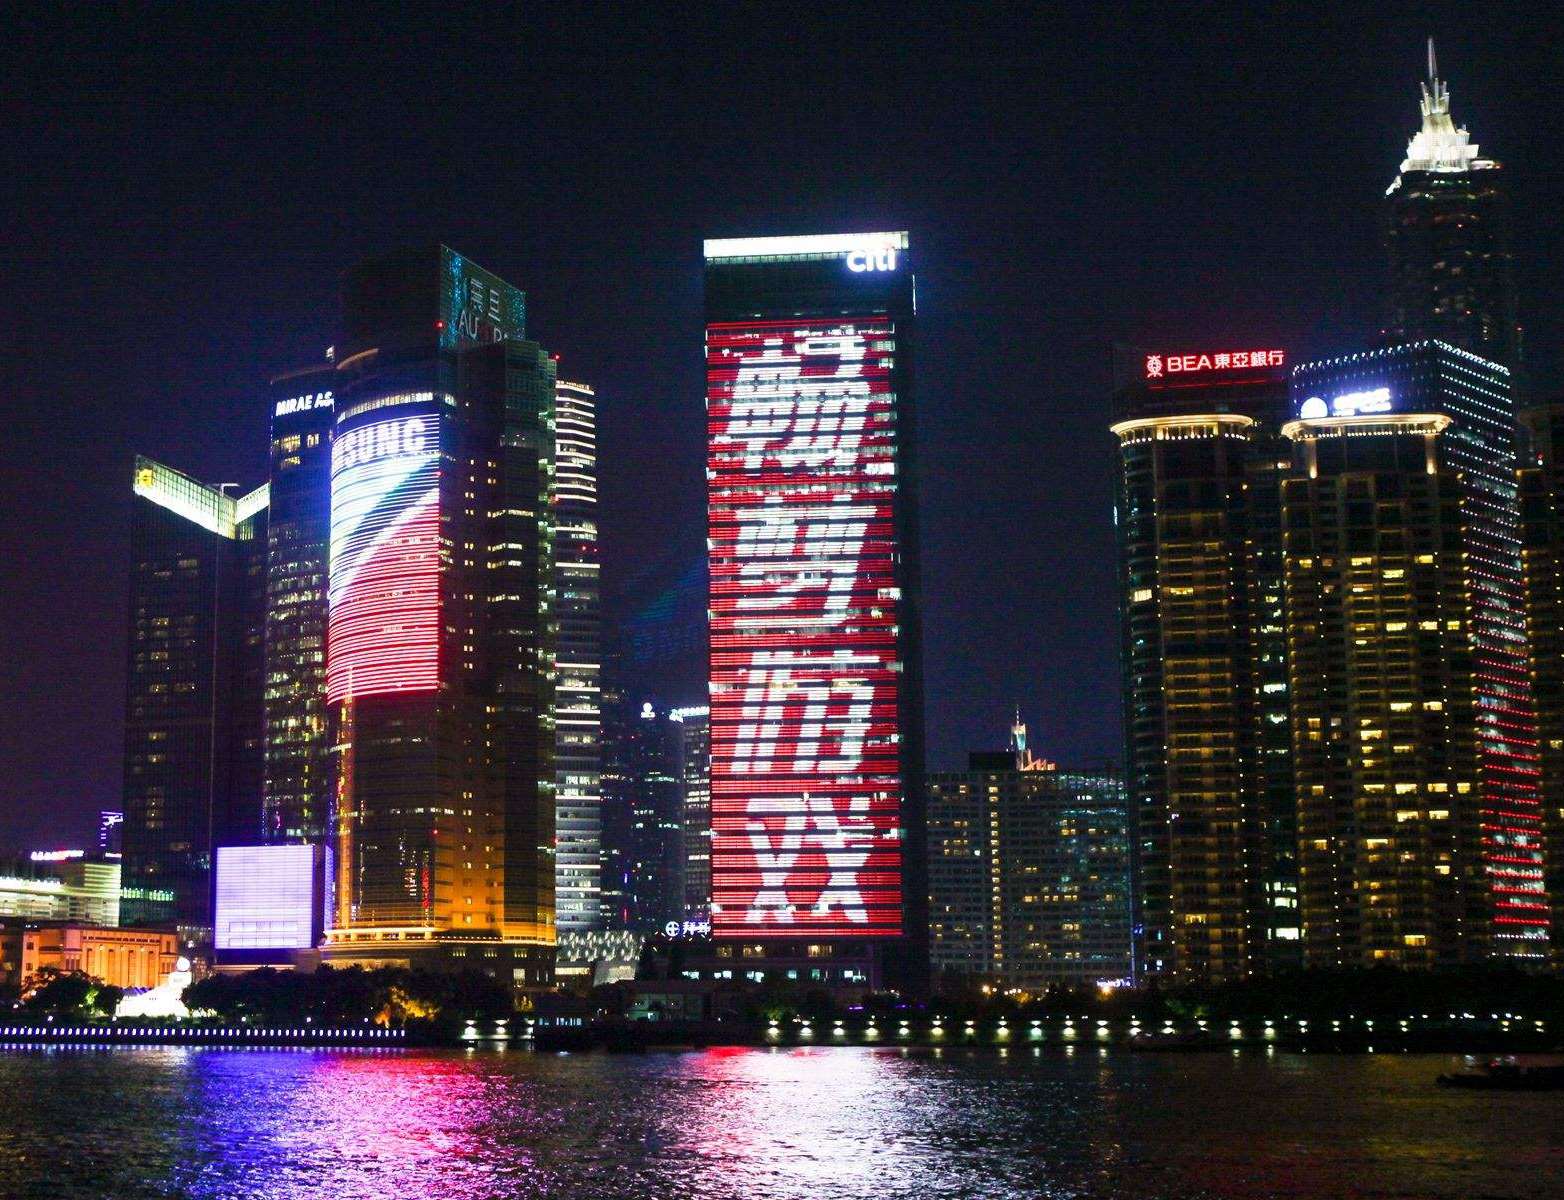 上海花旗大厦LED屏的广告